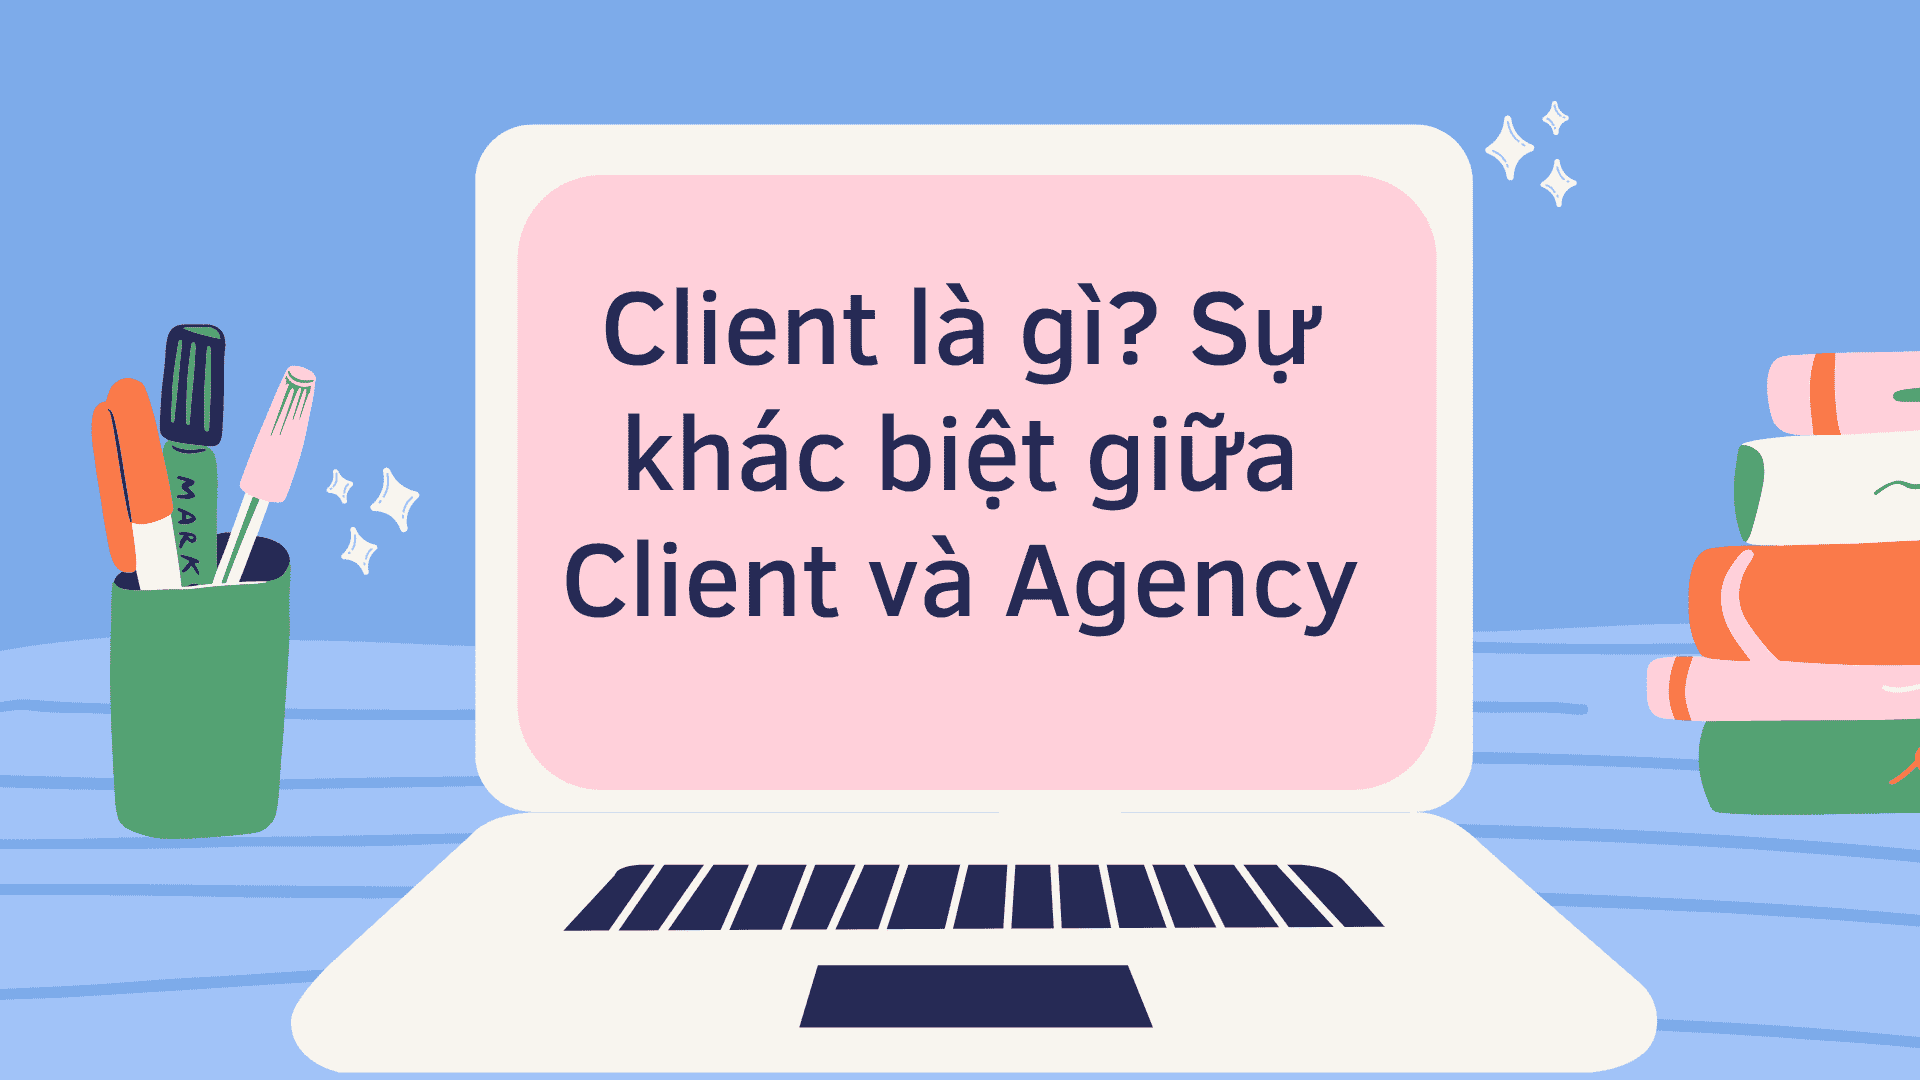 Sự khác biệt giữa Client và Agency là gì?